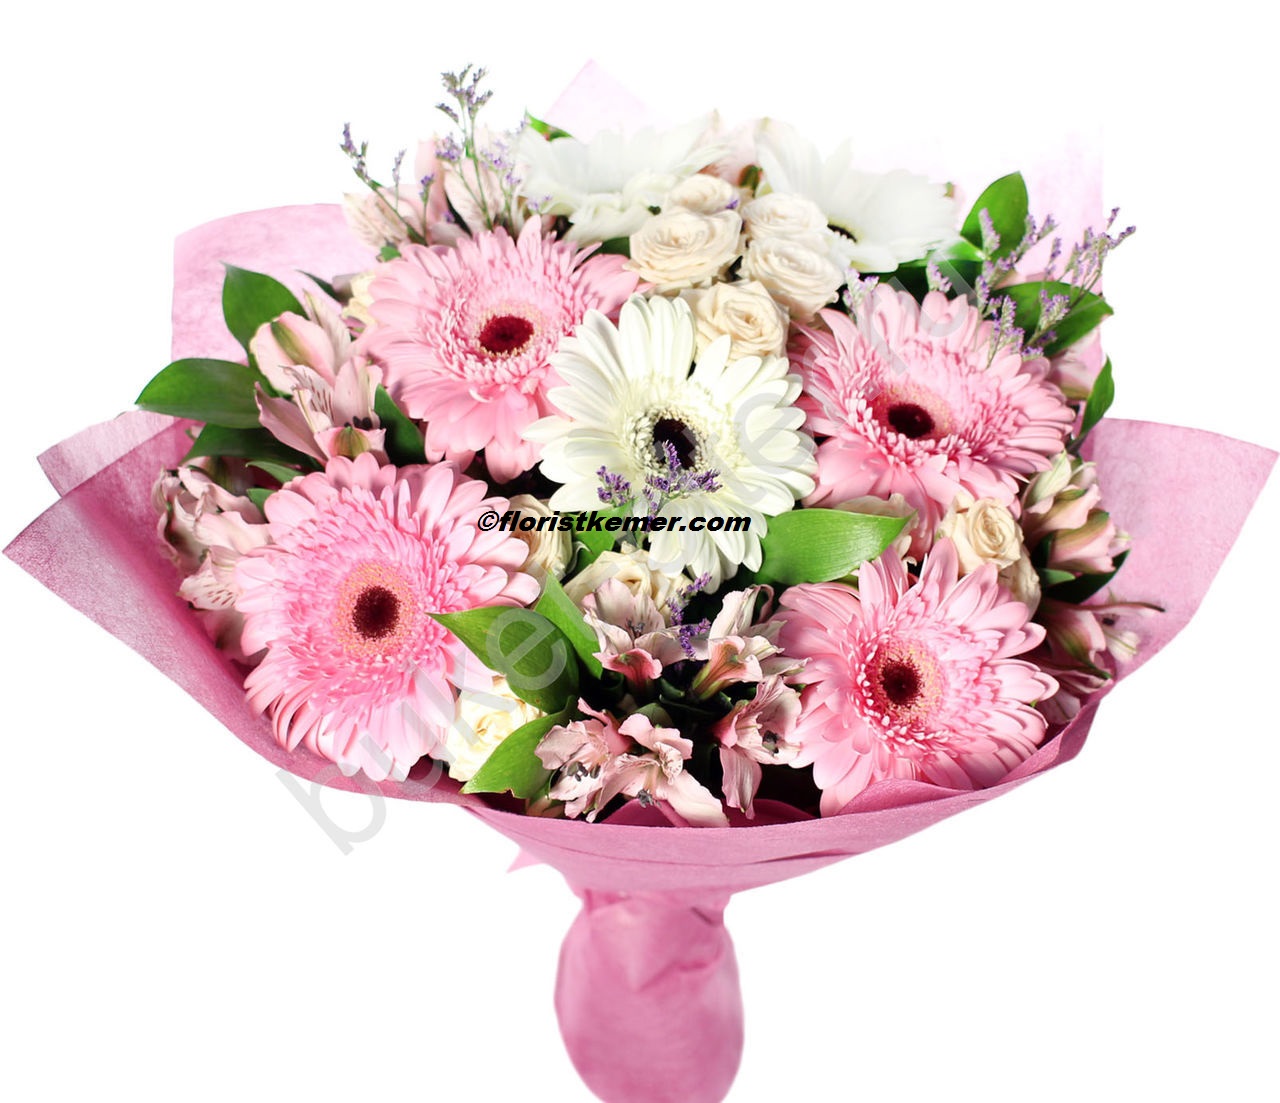  Kemer Blumenlieferung Bouquet Pink & White Celbera